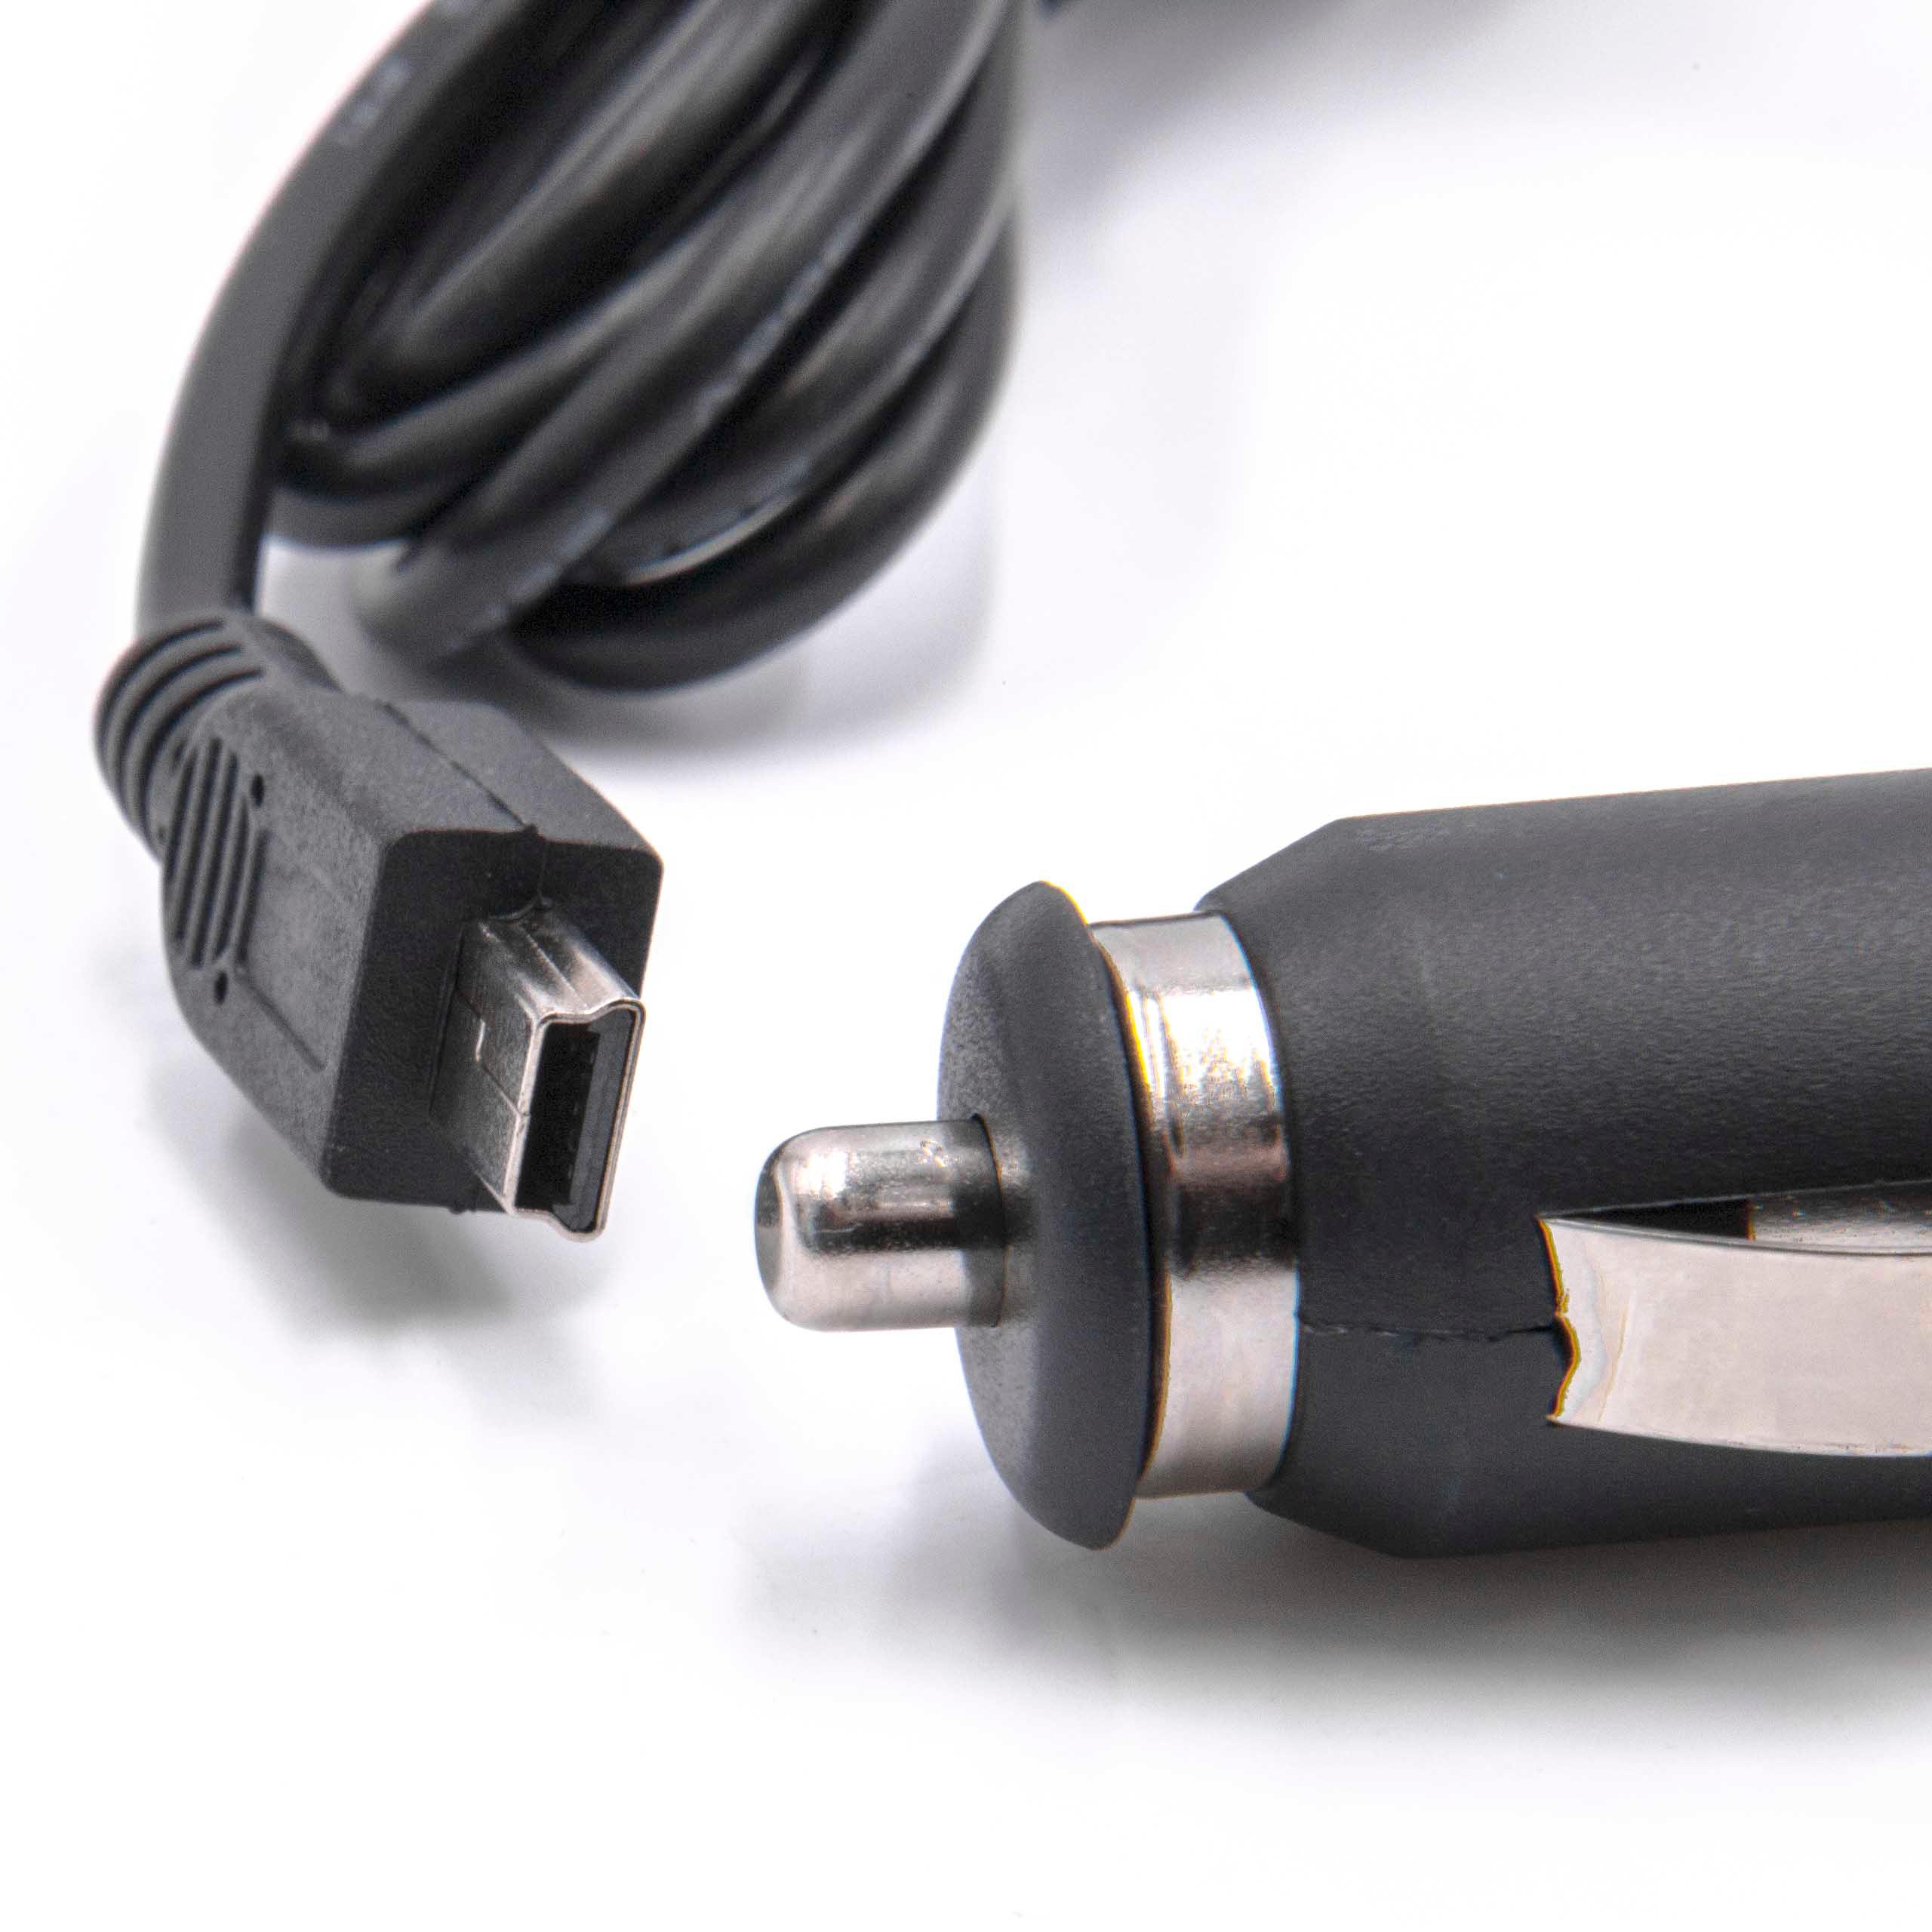 Ładowarka samochodowa Mini USB do urządzeń np. nawigacji GPS - 1,0 A